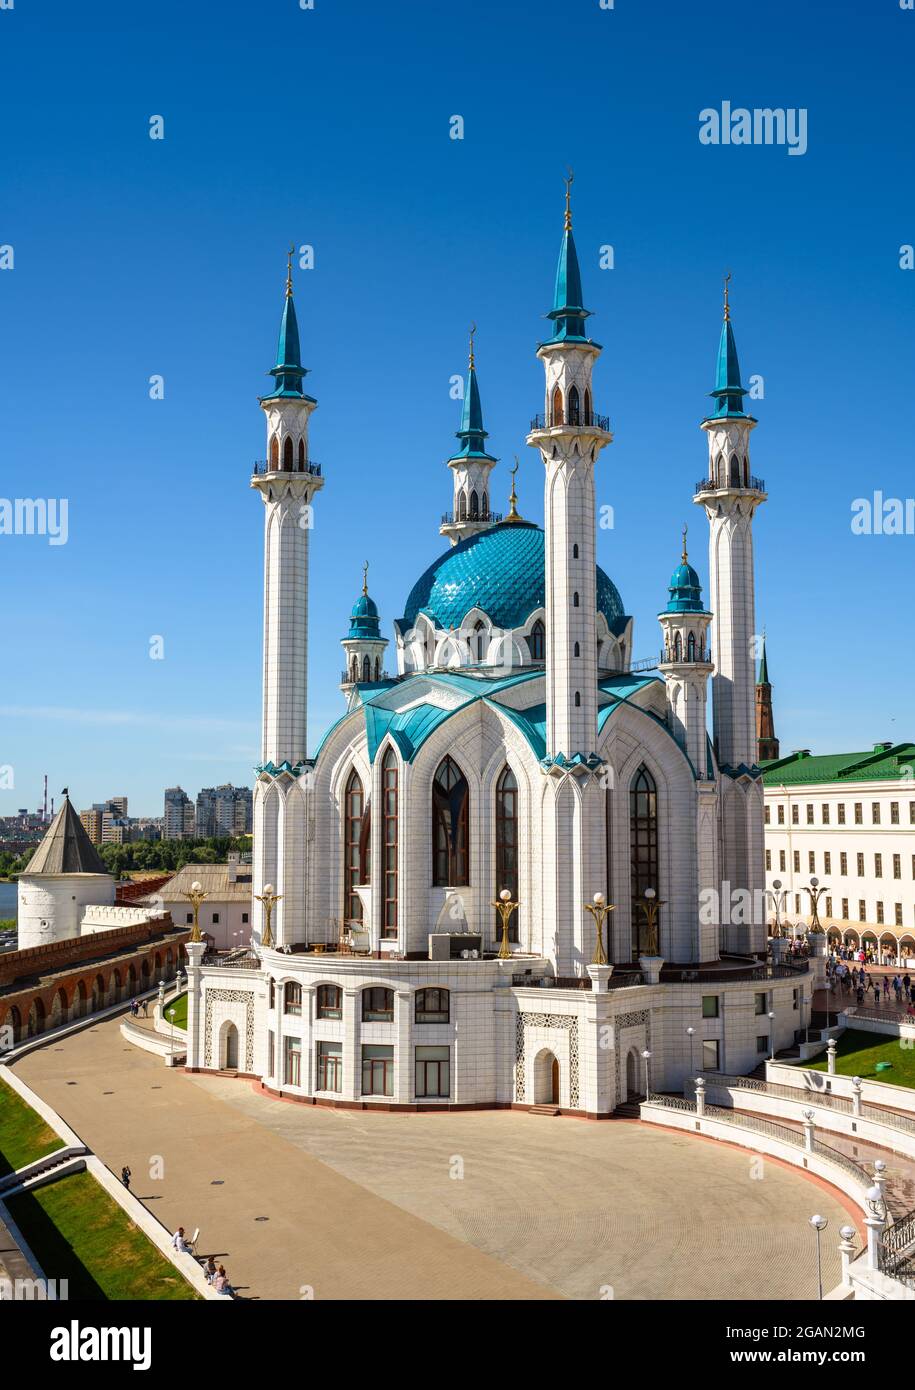 Mosquée Kul Sharif au Kremlin kazan, Tatarstan, Russie. C'est un monument célèbre de Kazan. Vue aérienne de la belle architecture islamique, attractions touristiques Banque D'Images